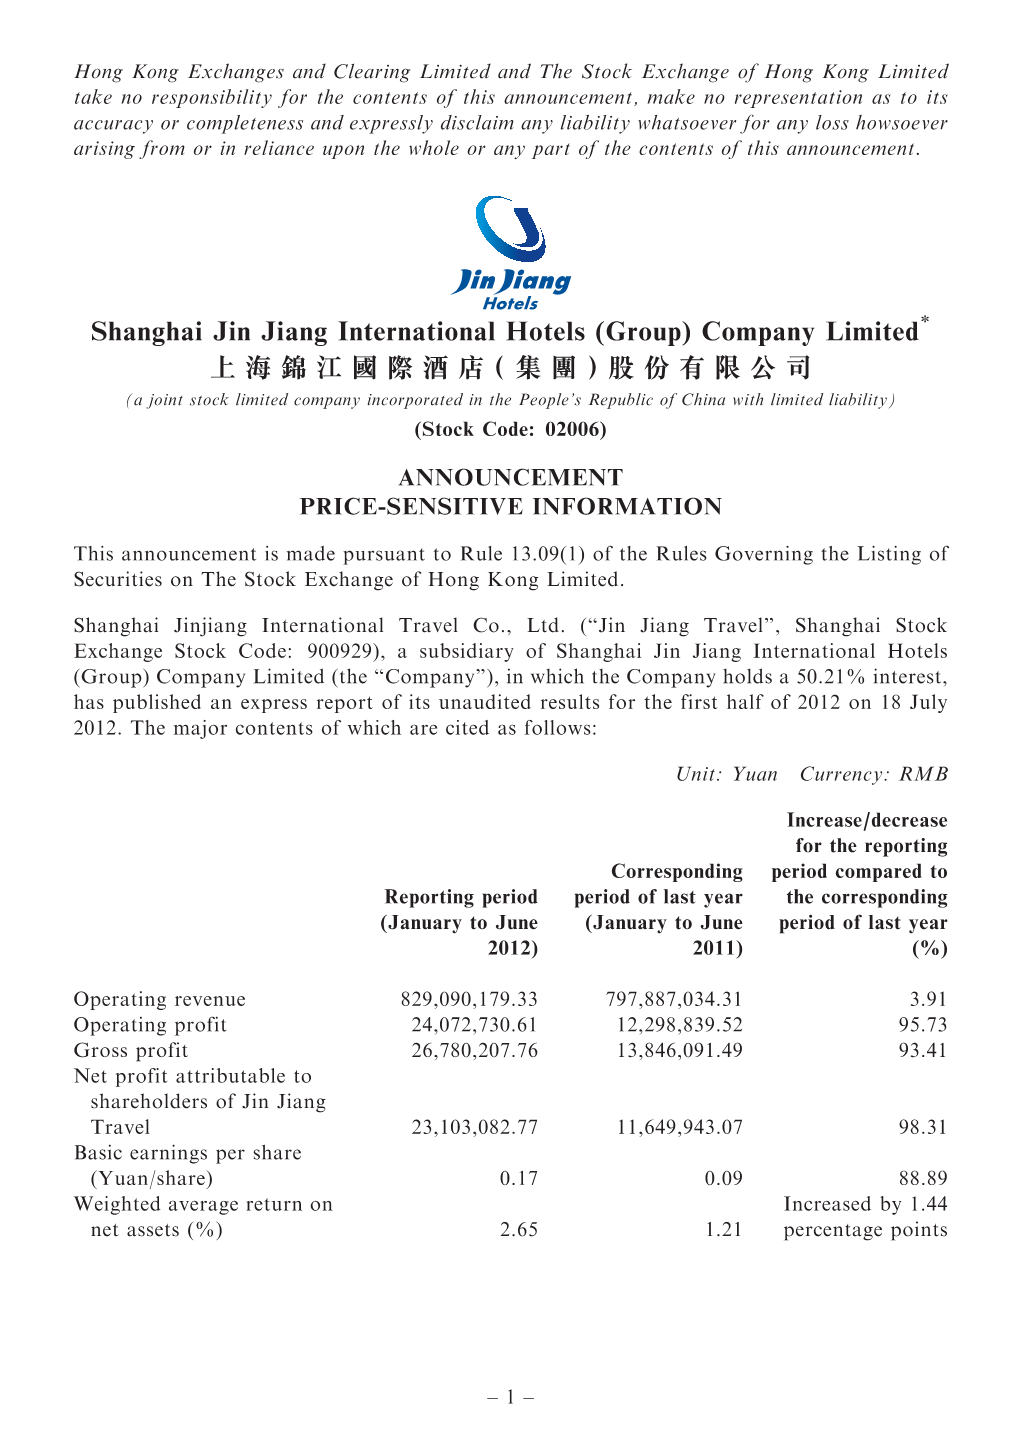 Shanghai Jin Jiang International Hotels